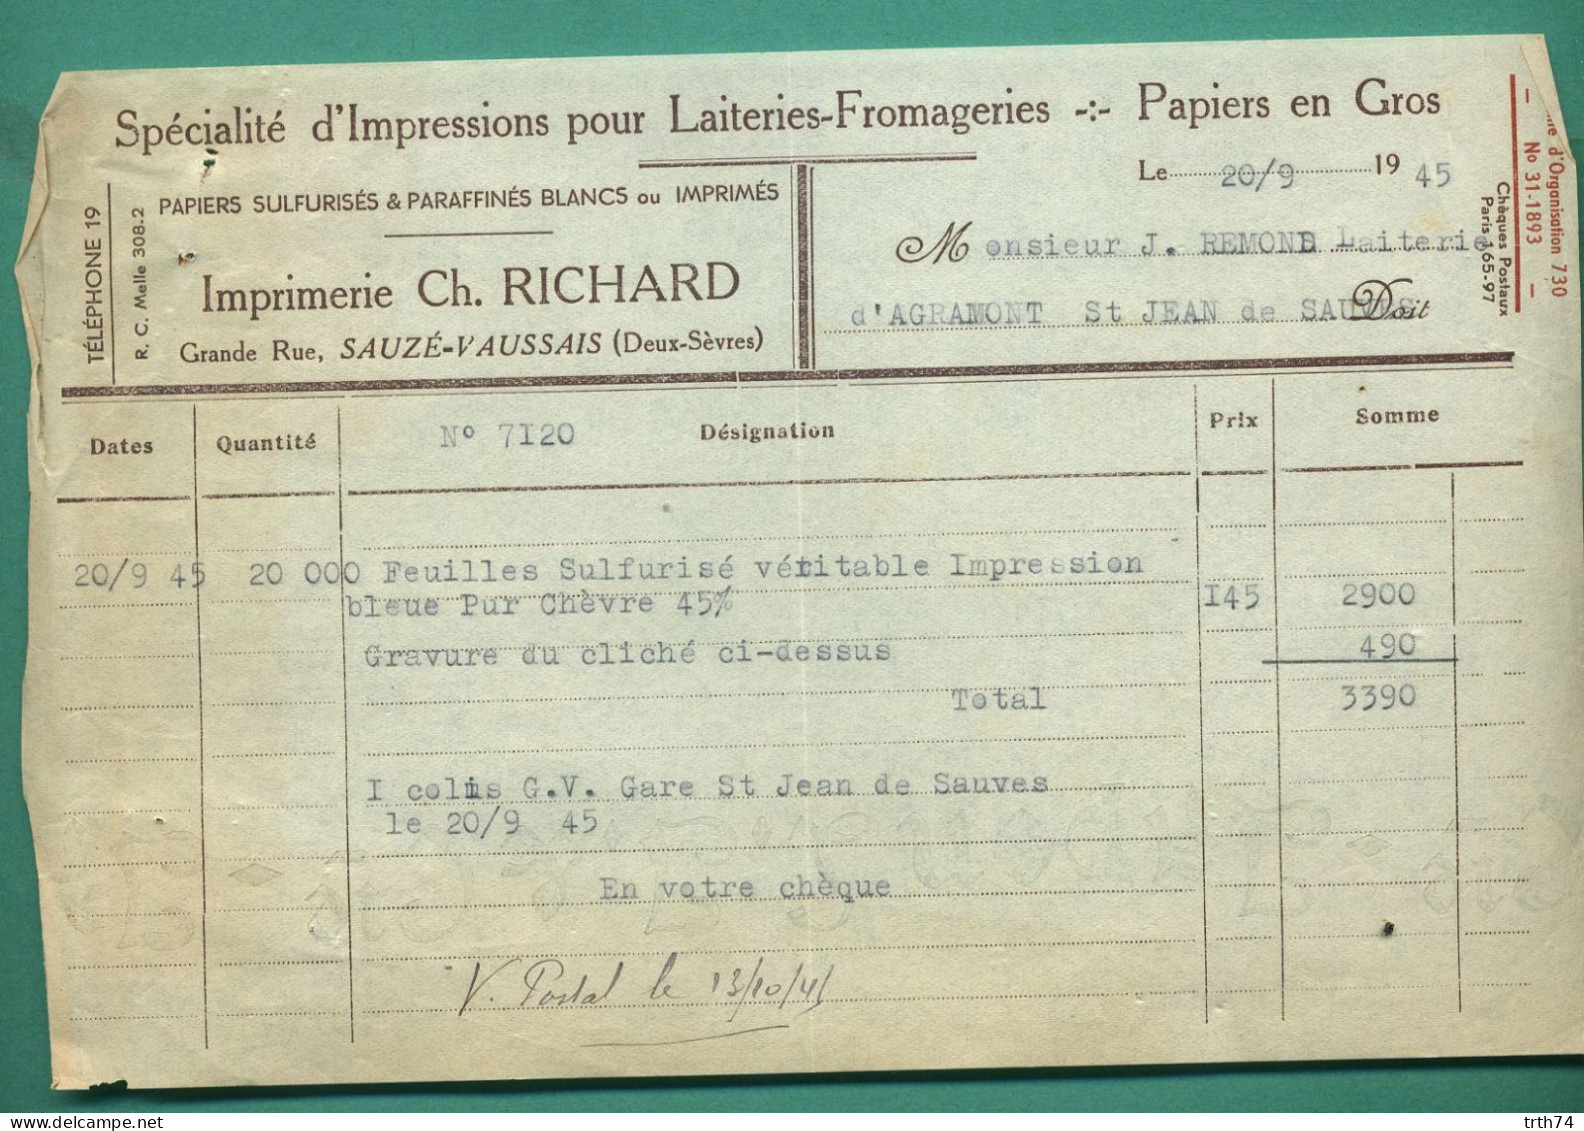 79 Sauzé Vaussais Richard Papiers Sulfurisés Et Paraffinés Pour Laiteries Et Fromageries 20 09 1945 - Alimentos